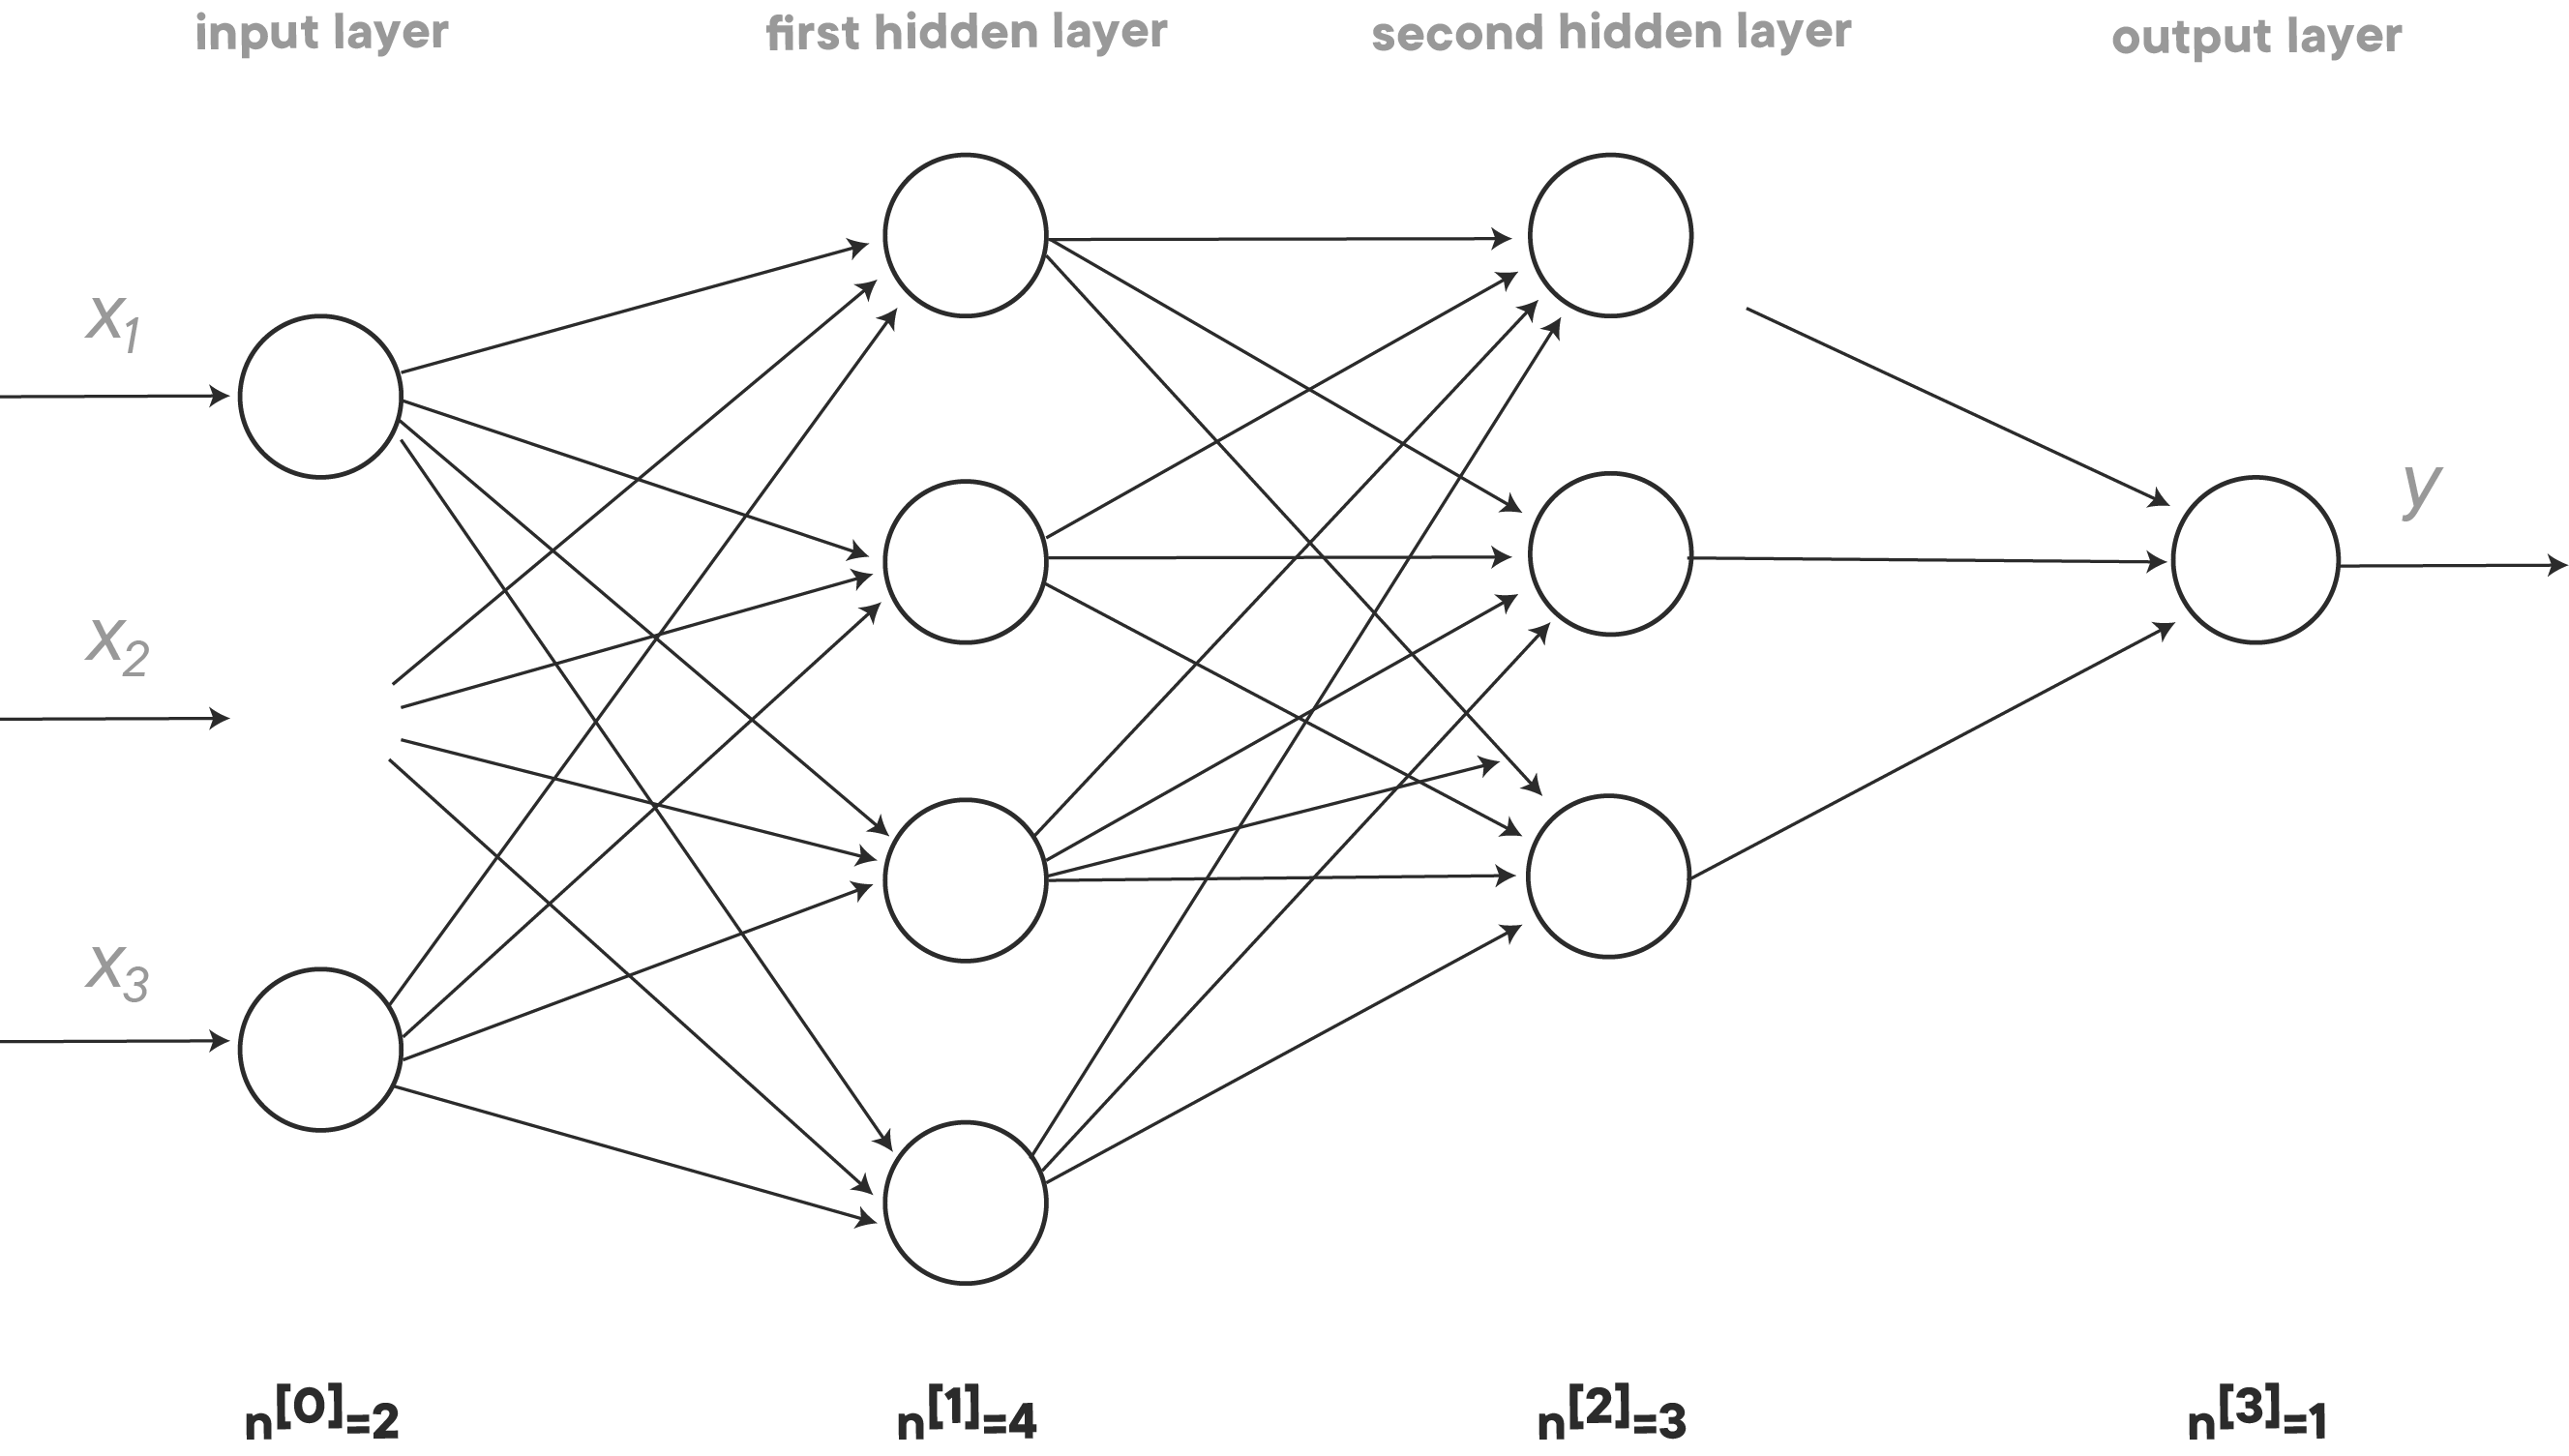 neural network with input layer, first hidden layer, second hidden layer, output layer